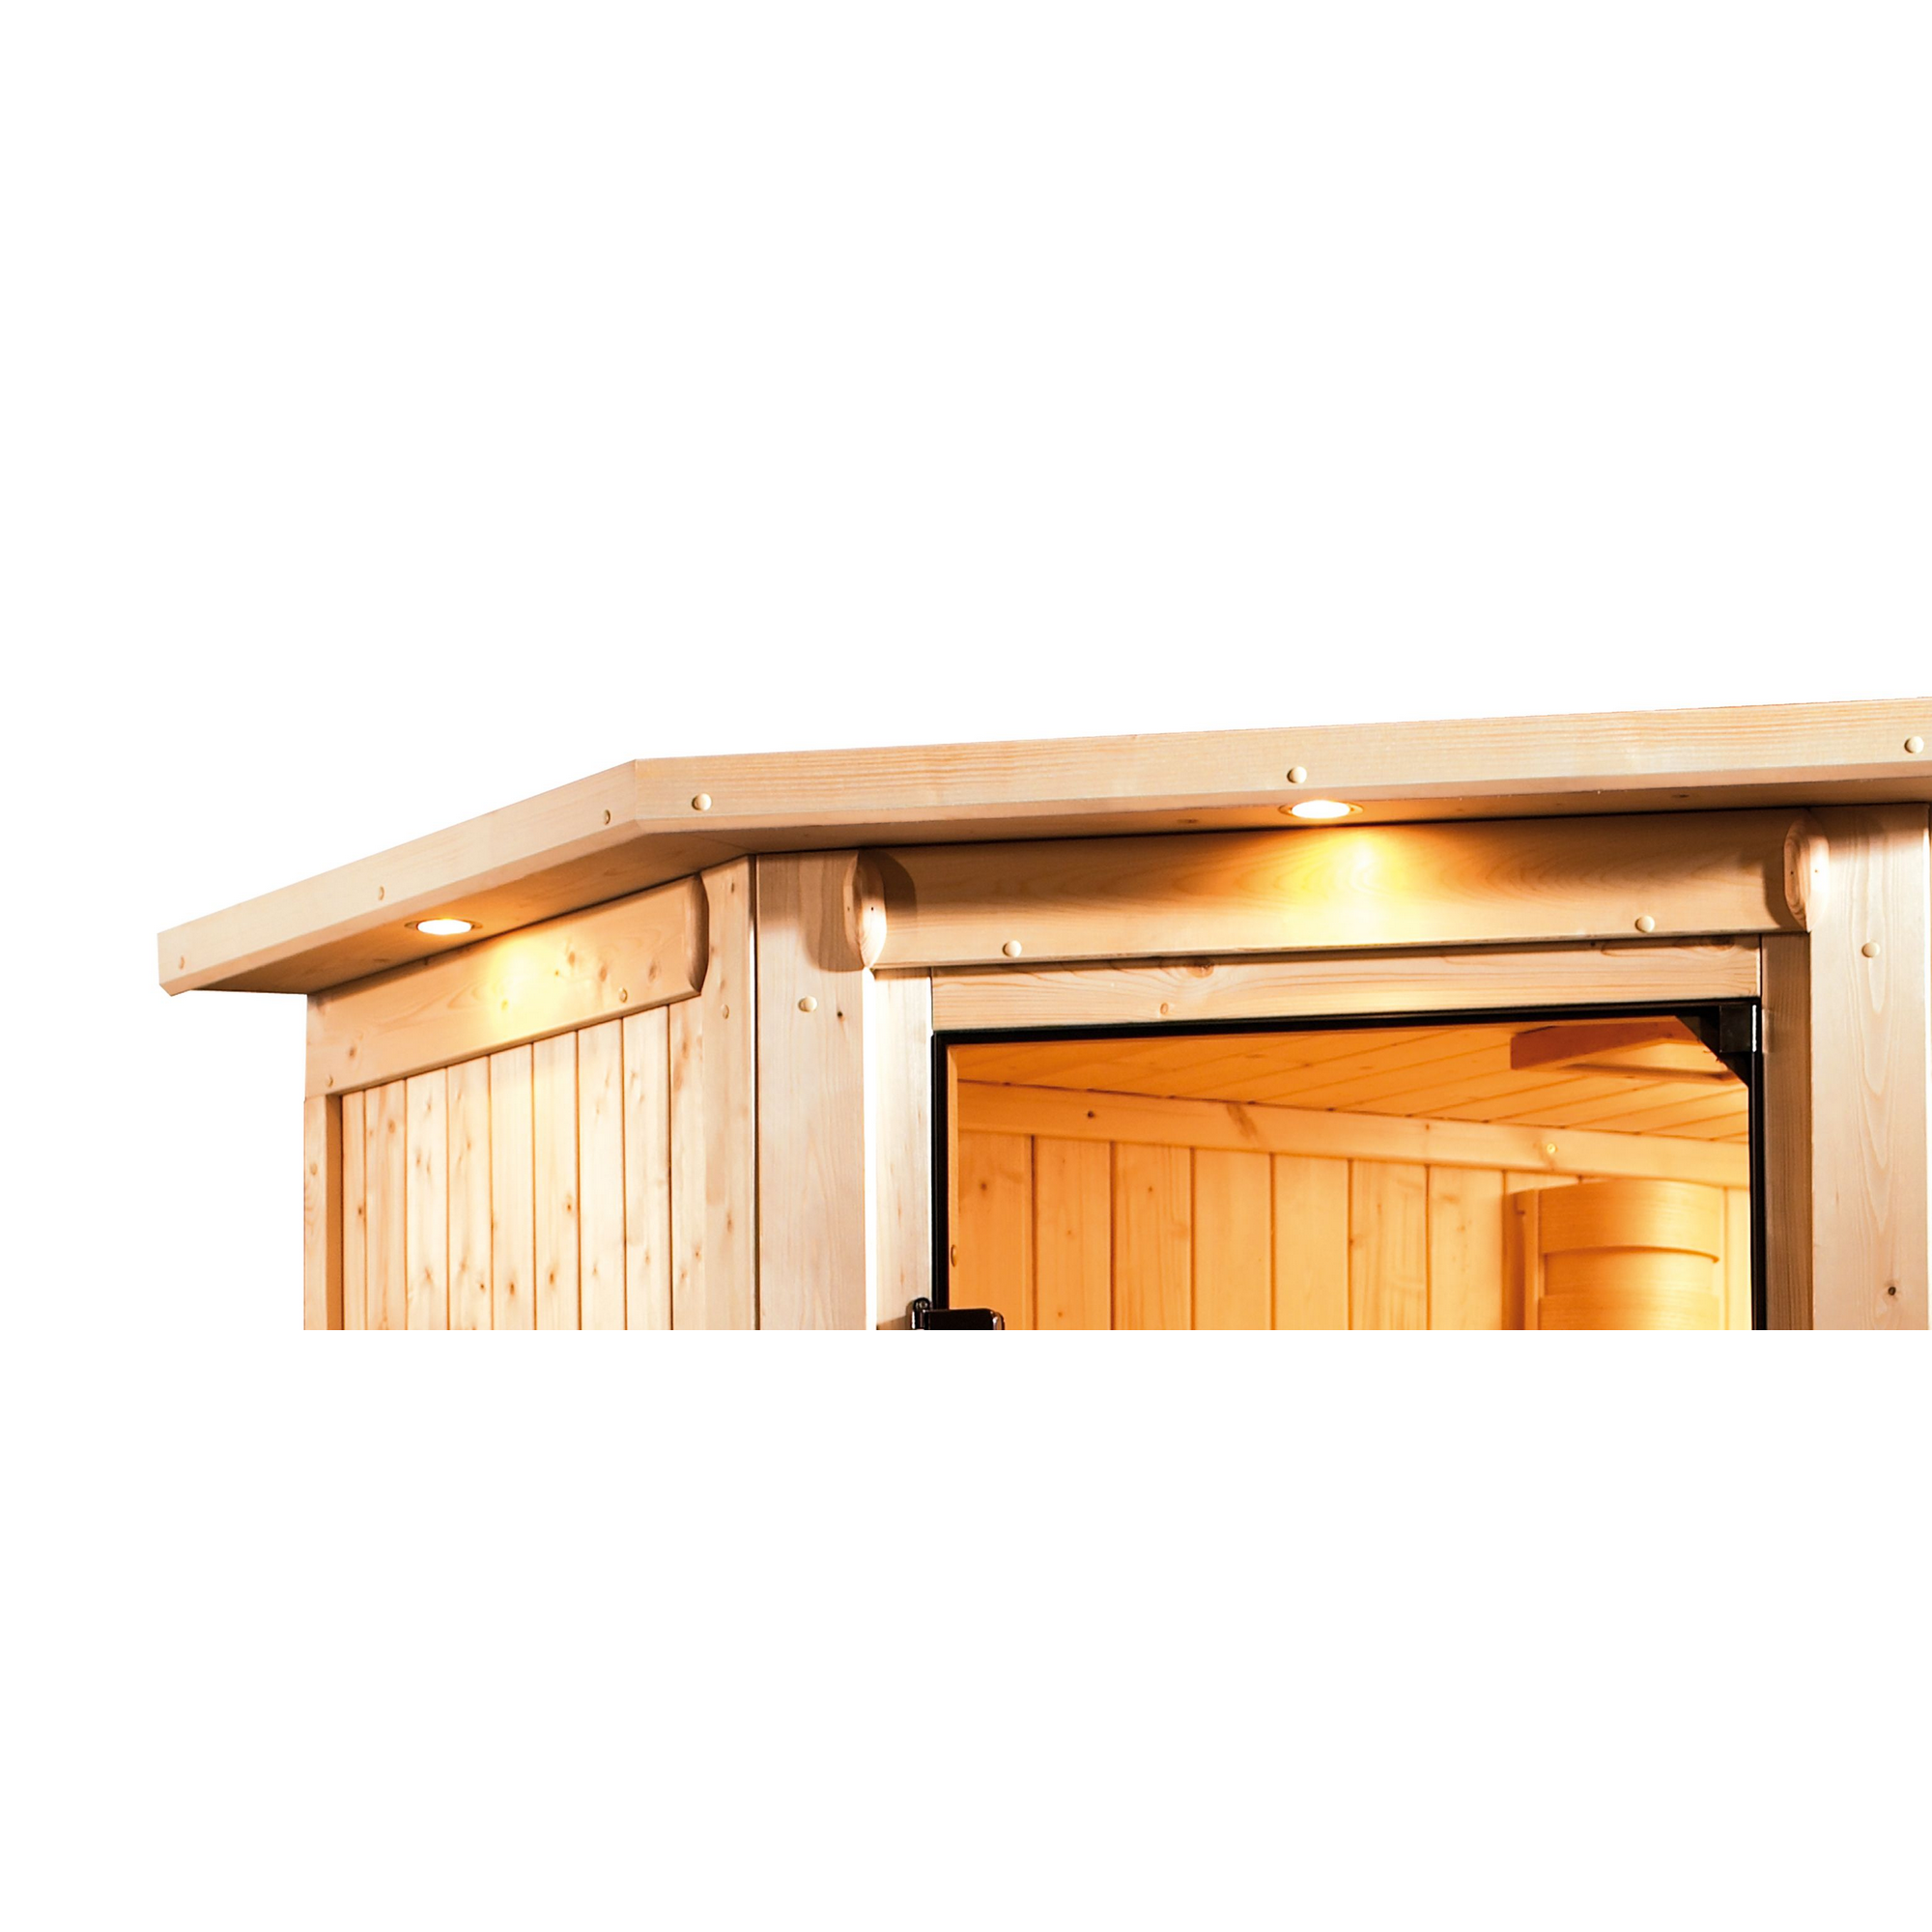 Elementsauna 'Arabella' naturbelassen mit Kranz bronzierter Tür und Glasfront 9 kW Bio-Ofen externe Steuerung 240,5 x 248 x 202 cm + product picture